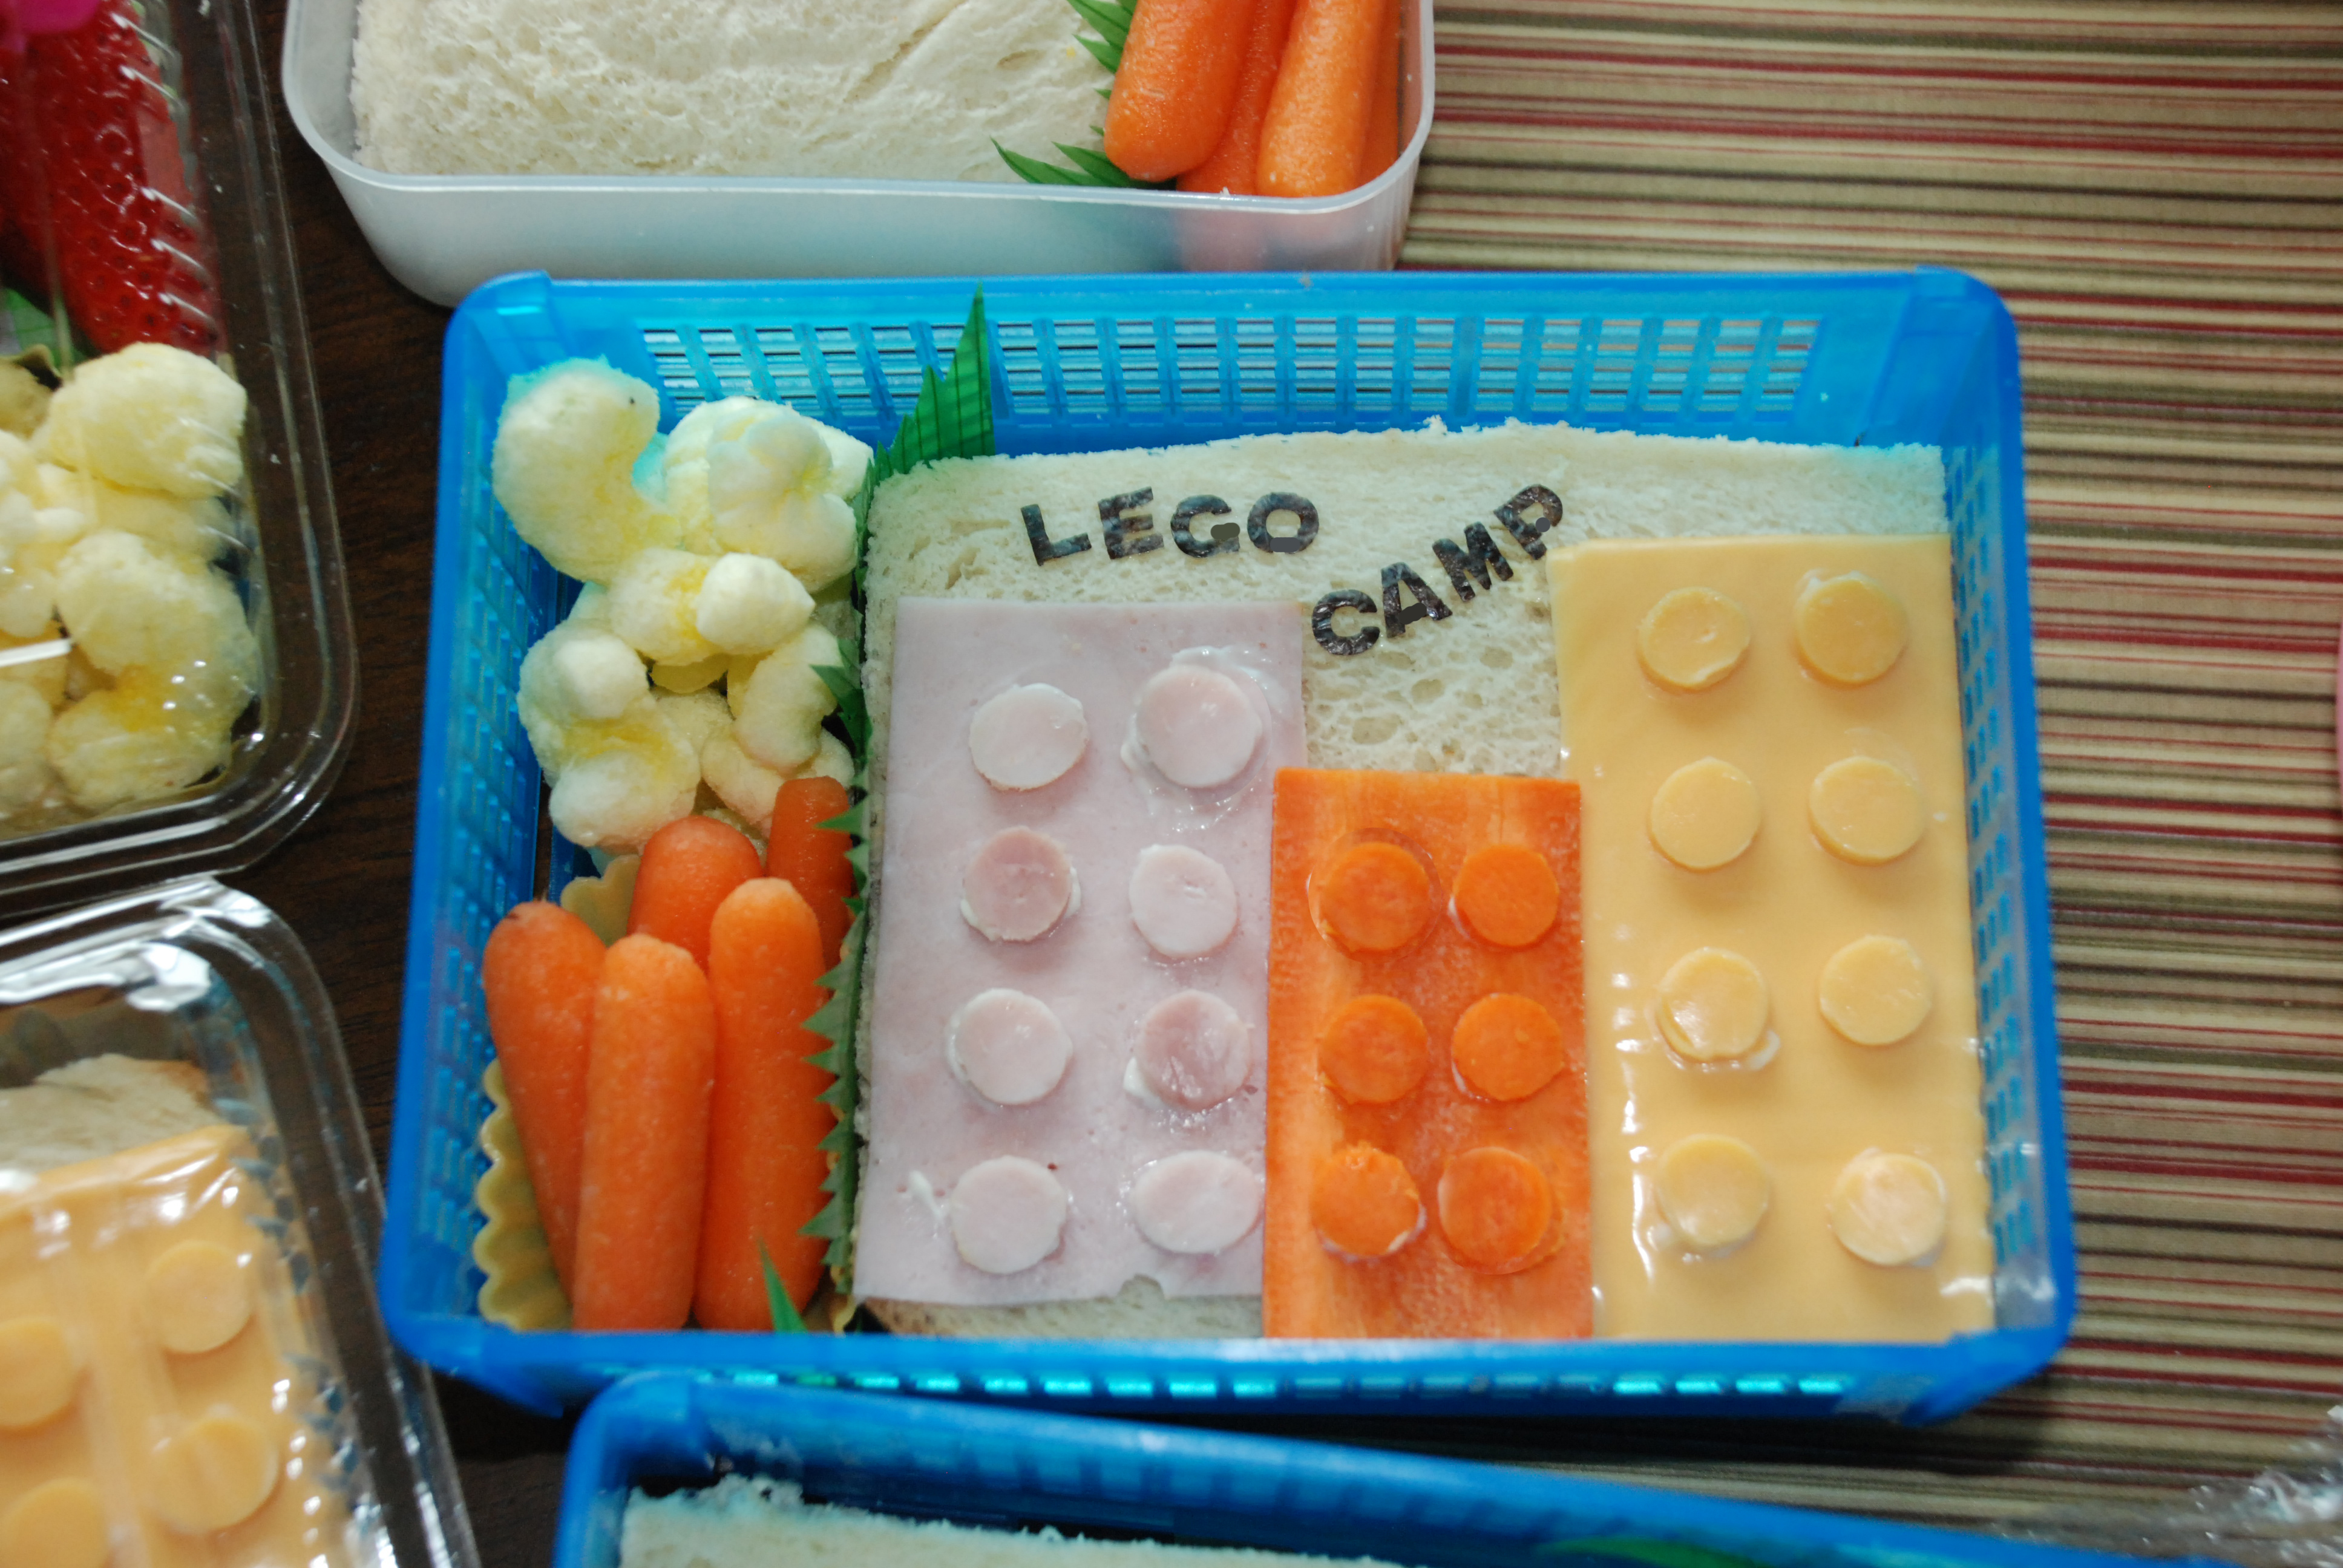 A lego lunch box…